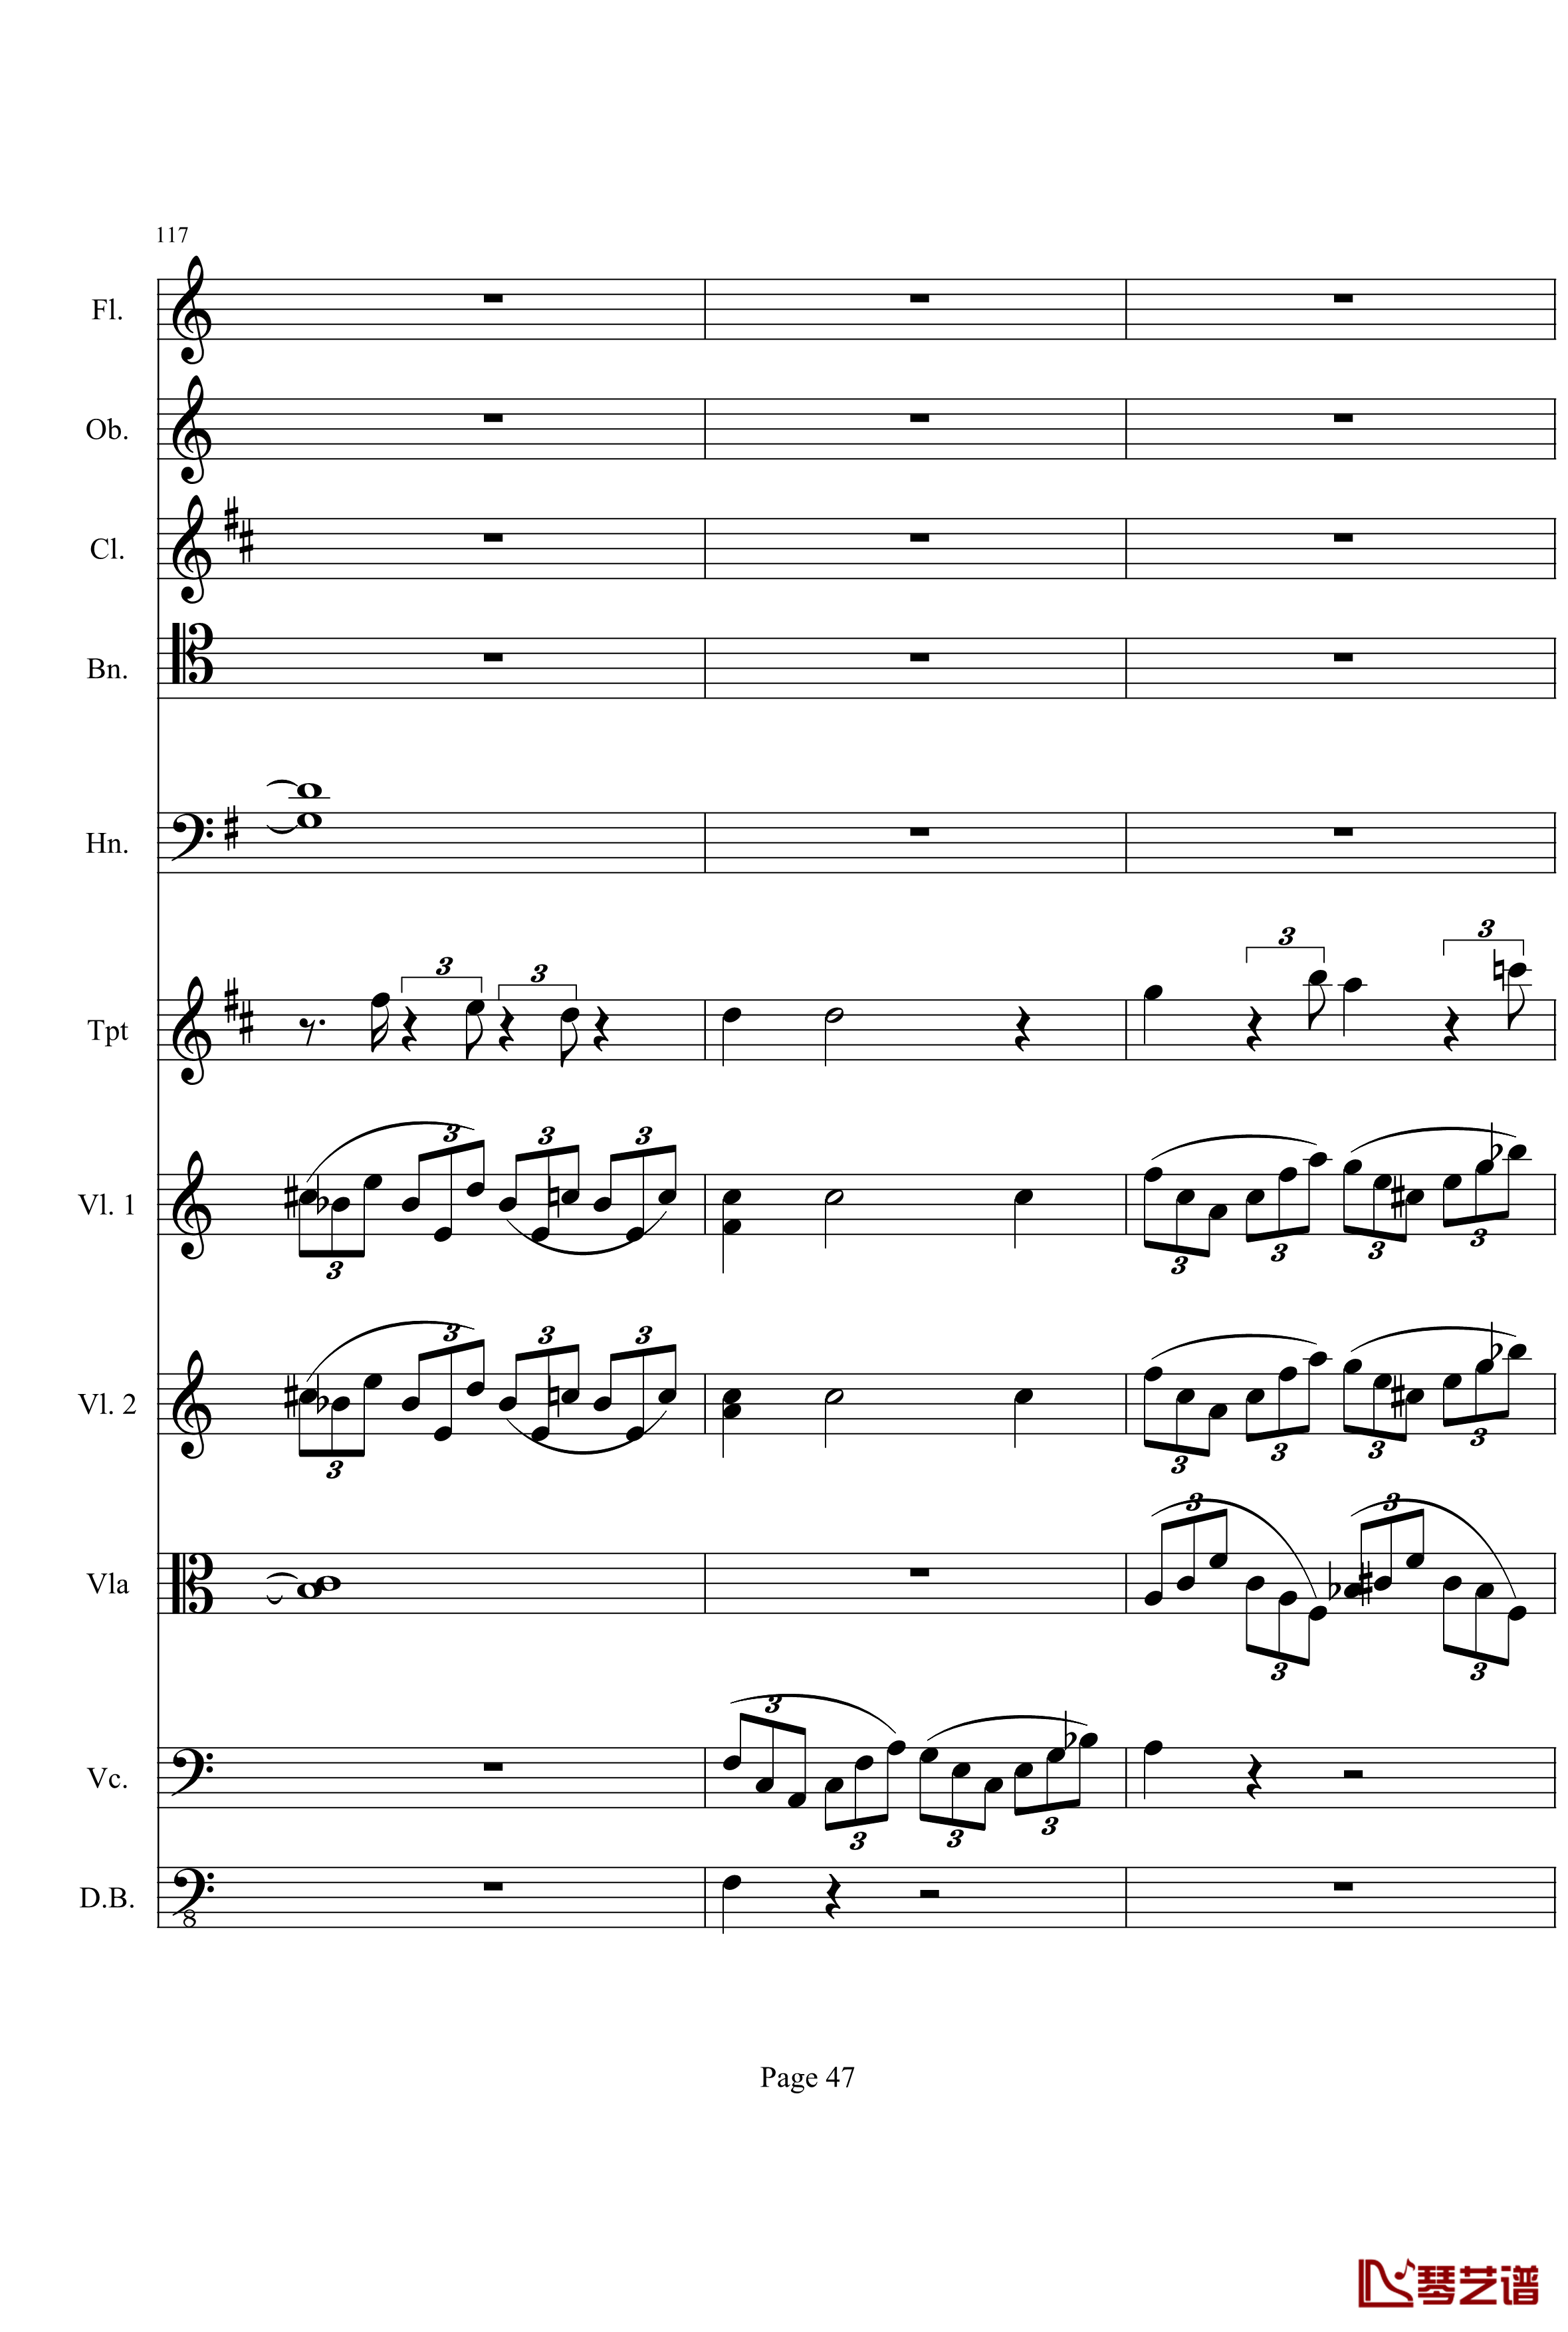 奏鸣曲之交响钢琴谱-第21首-Ⅰ-贝多芬-beethoven47